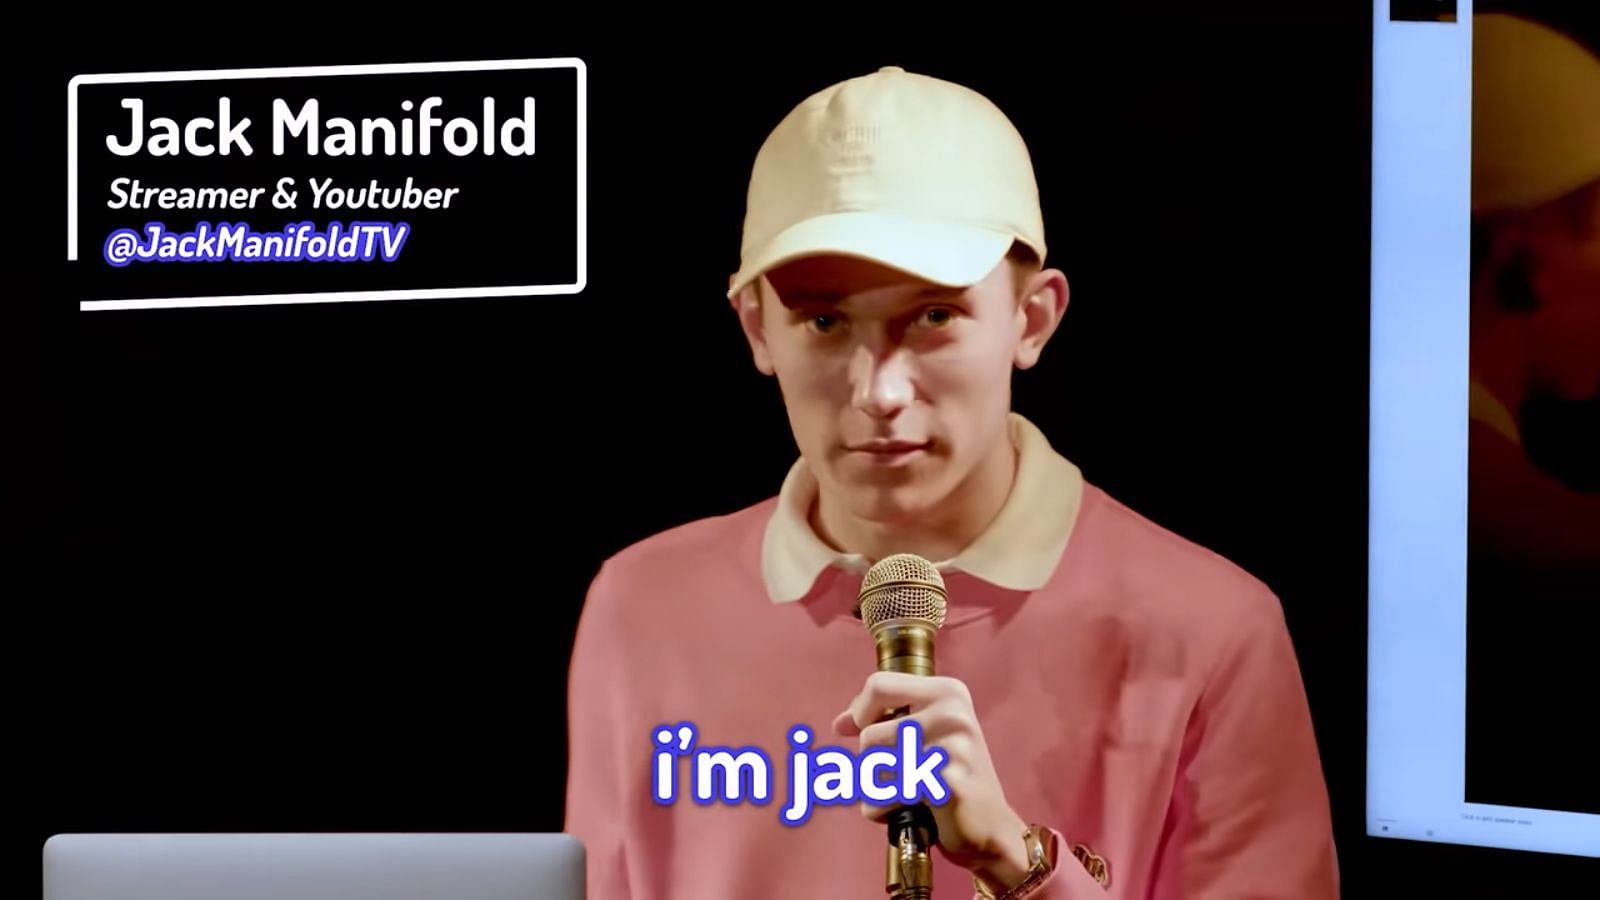 JackManifold (Image via YouTube)